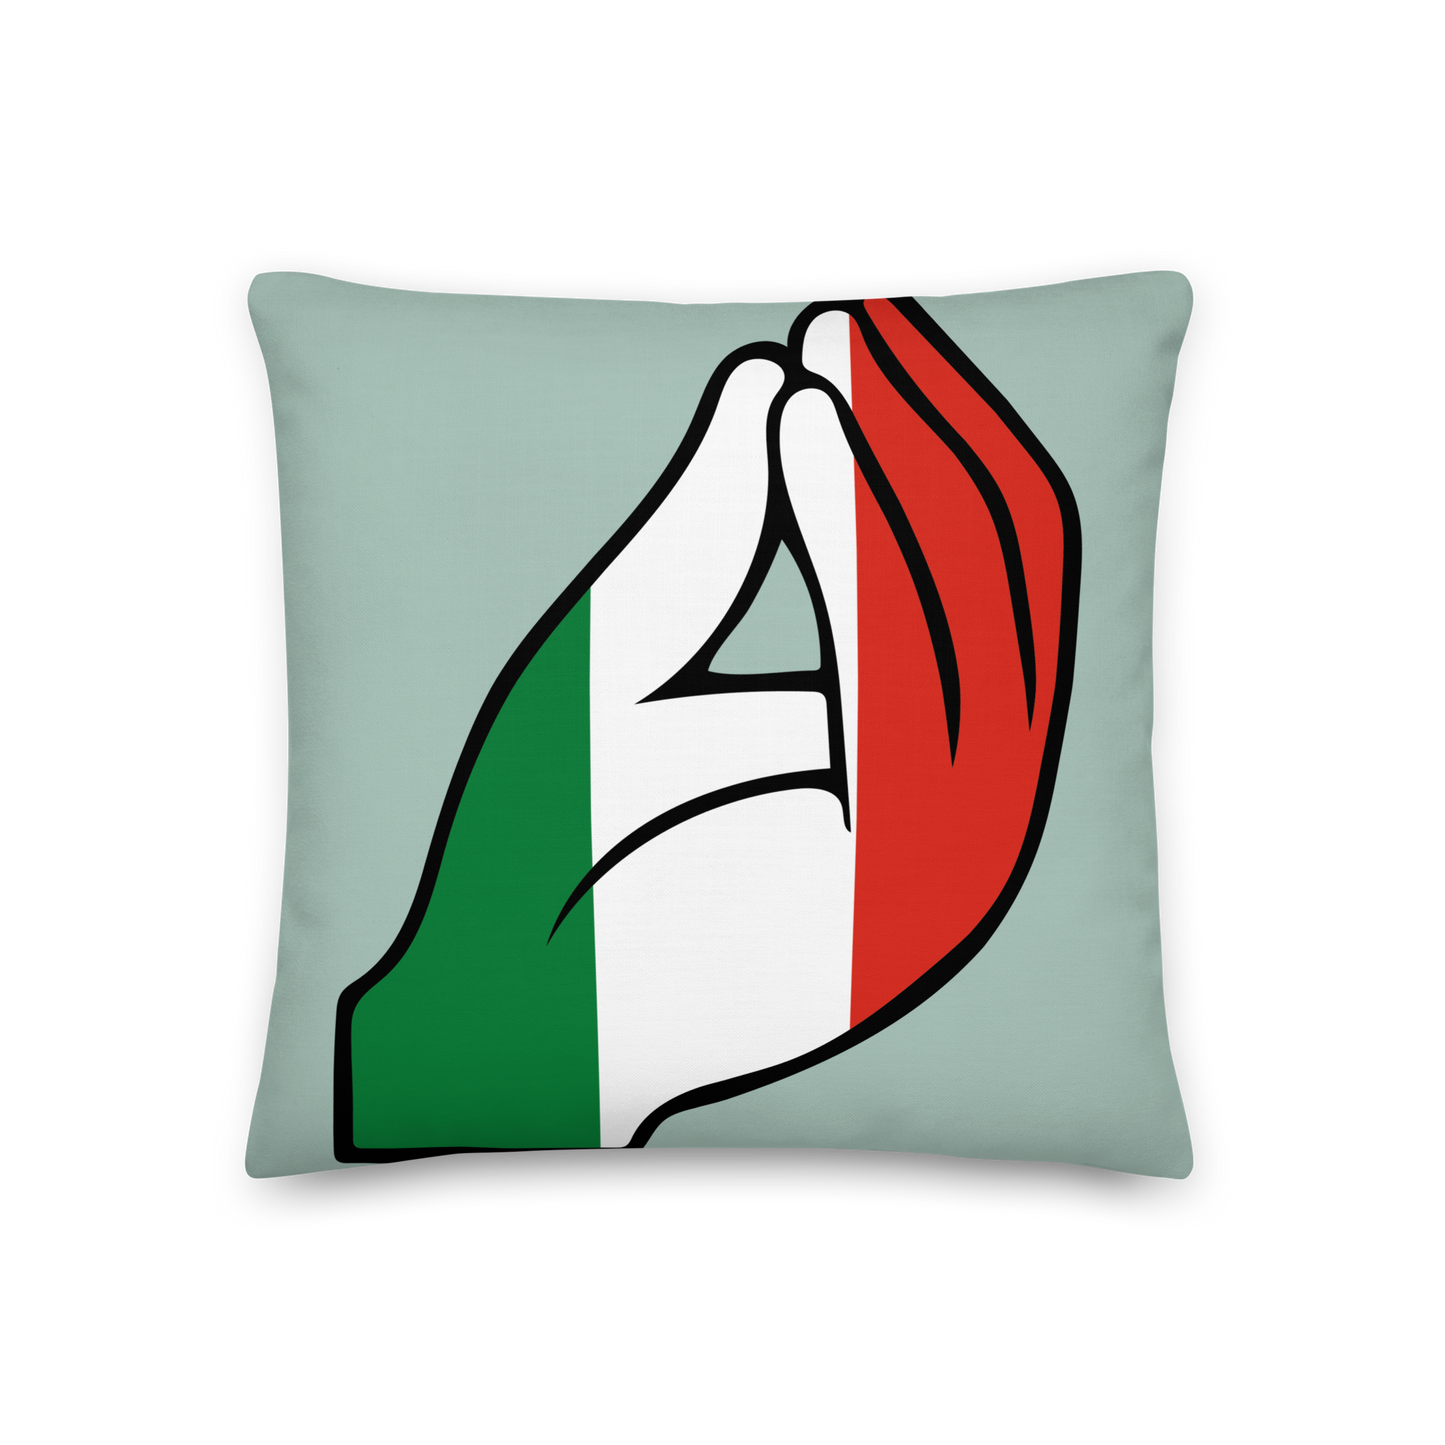 Italian Capiche Hand Pillow - Symbolic Italian Gesture Decor